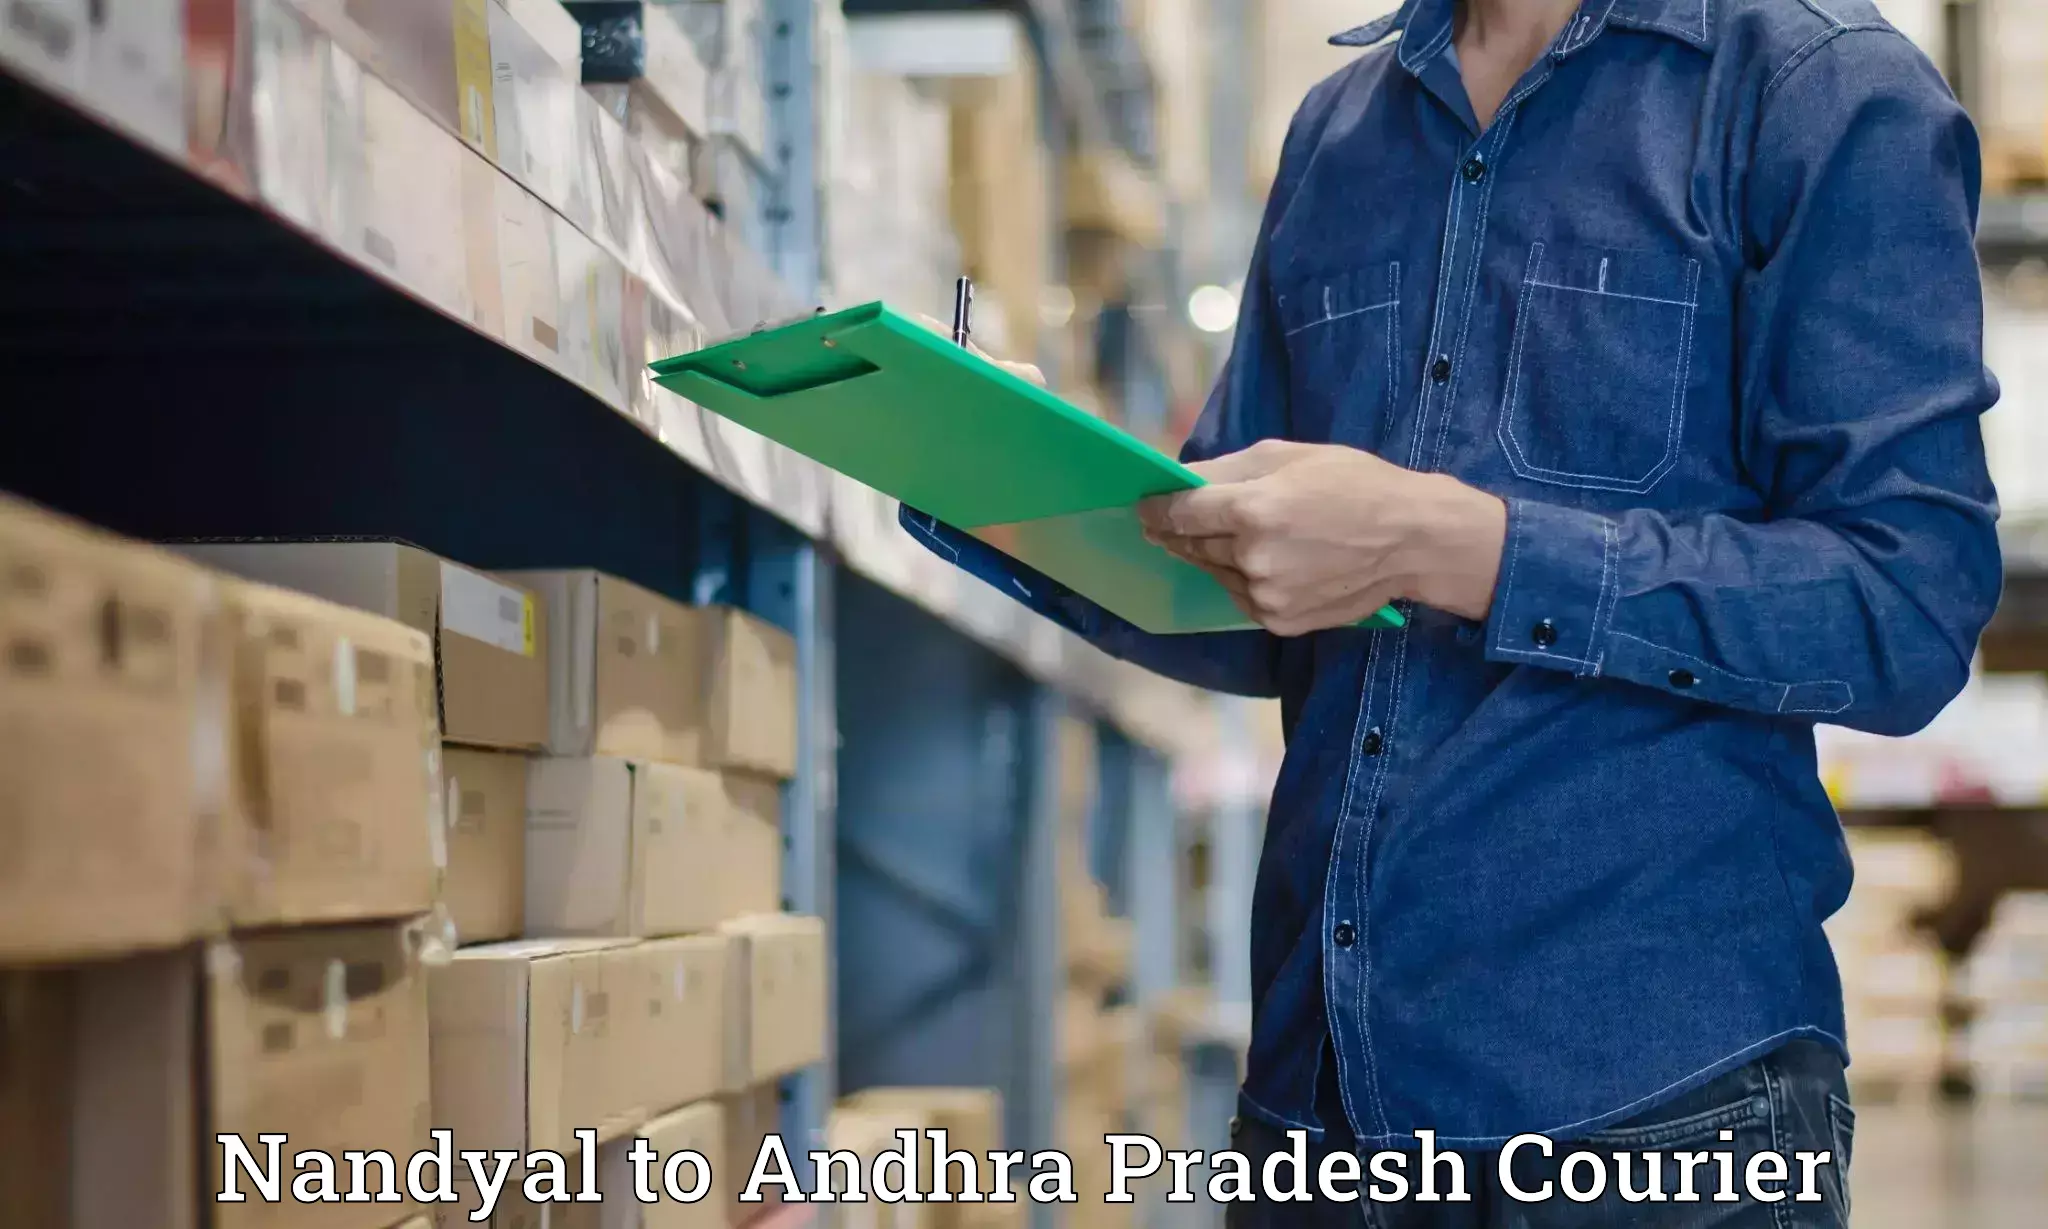 24-hour courier service Nandyal to Bhimavaram